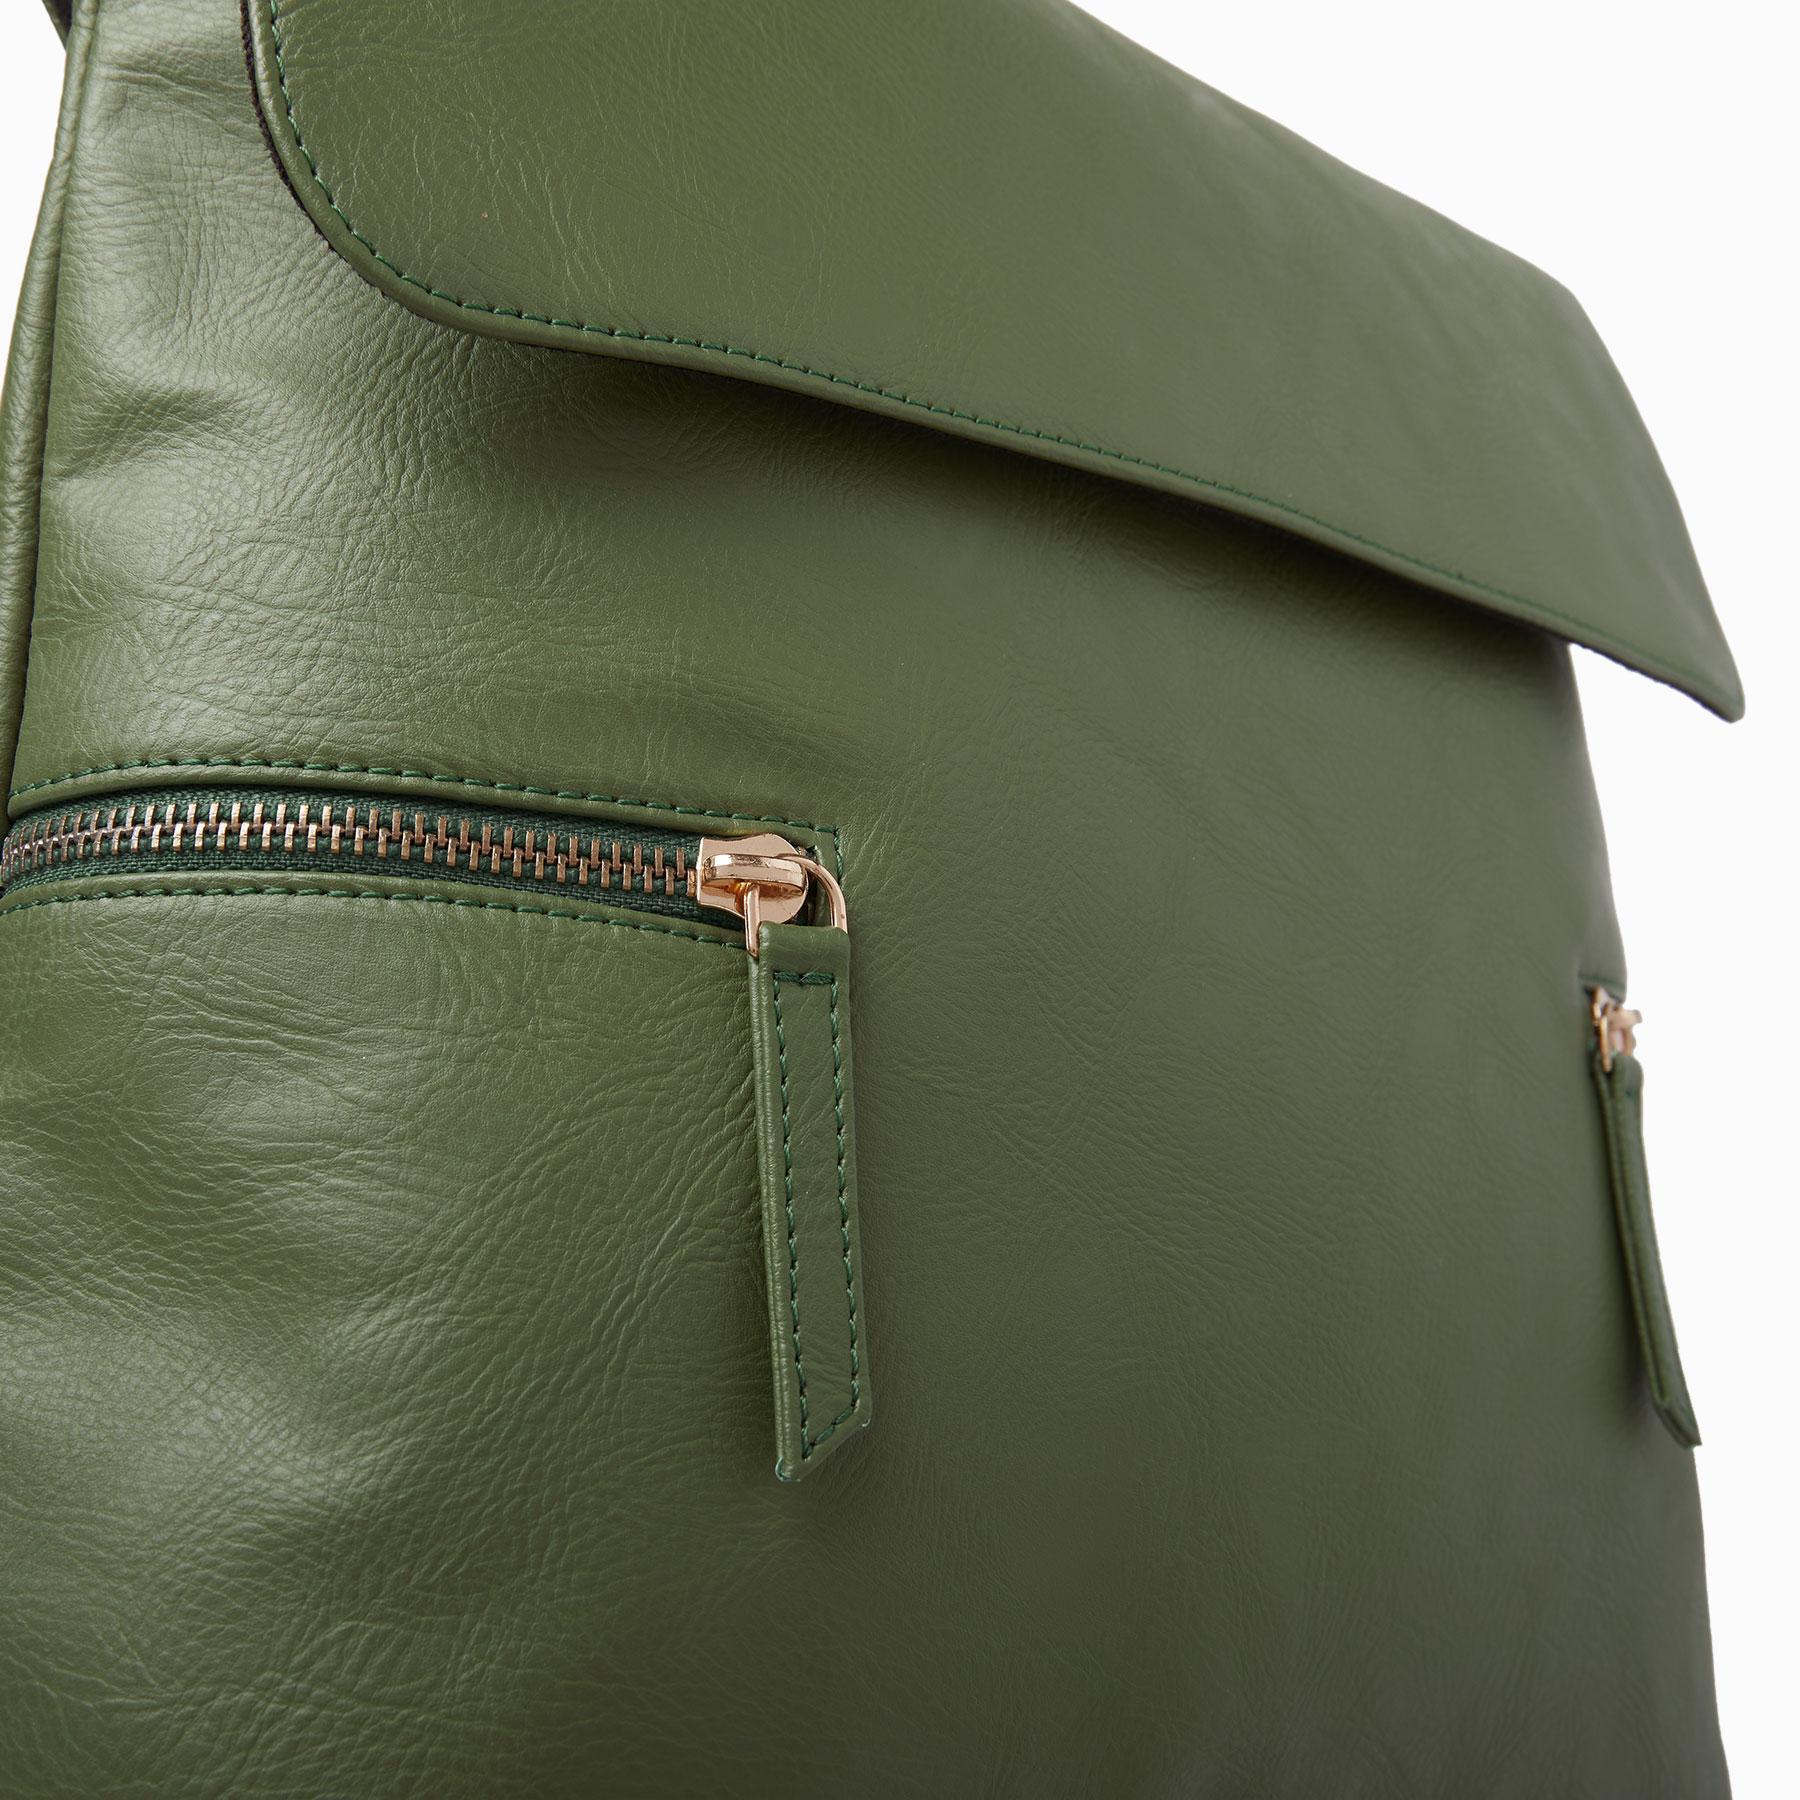 Olive Zipper Backpack